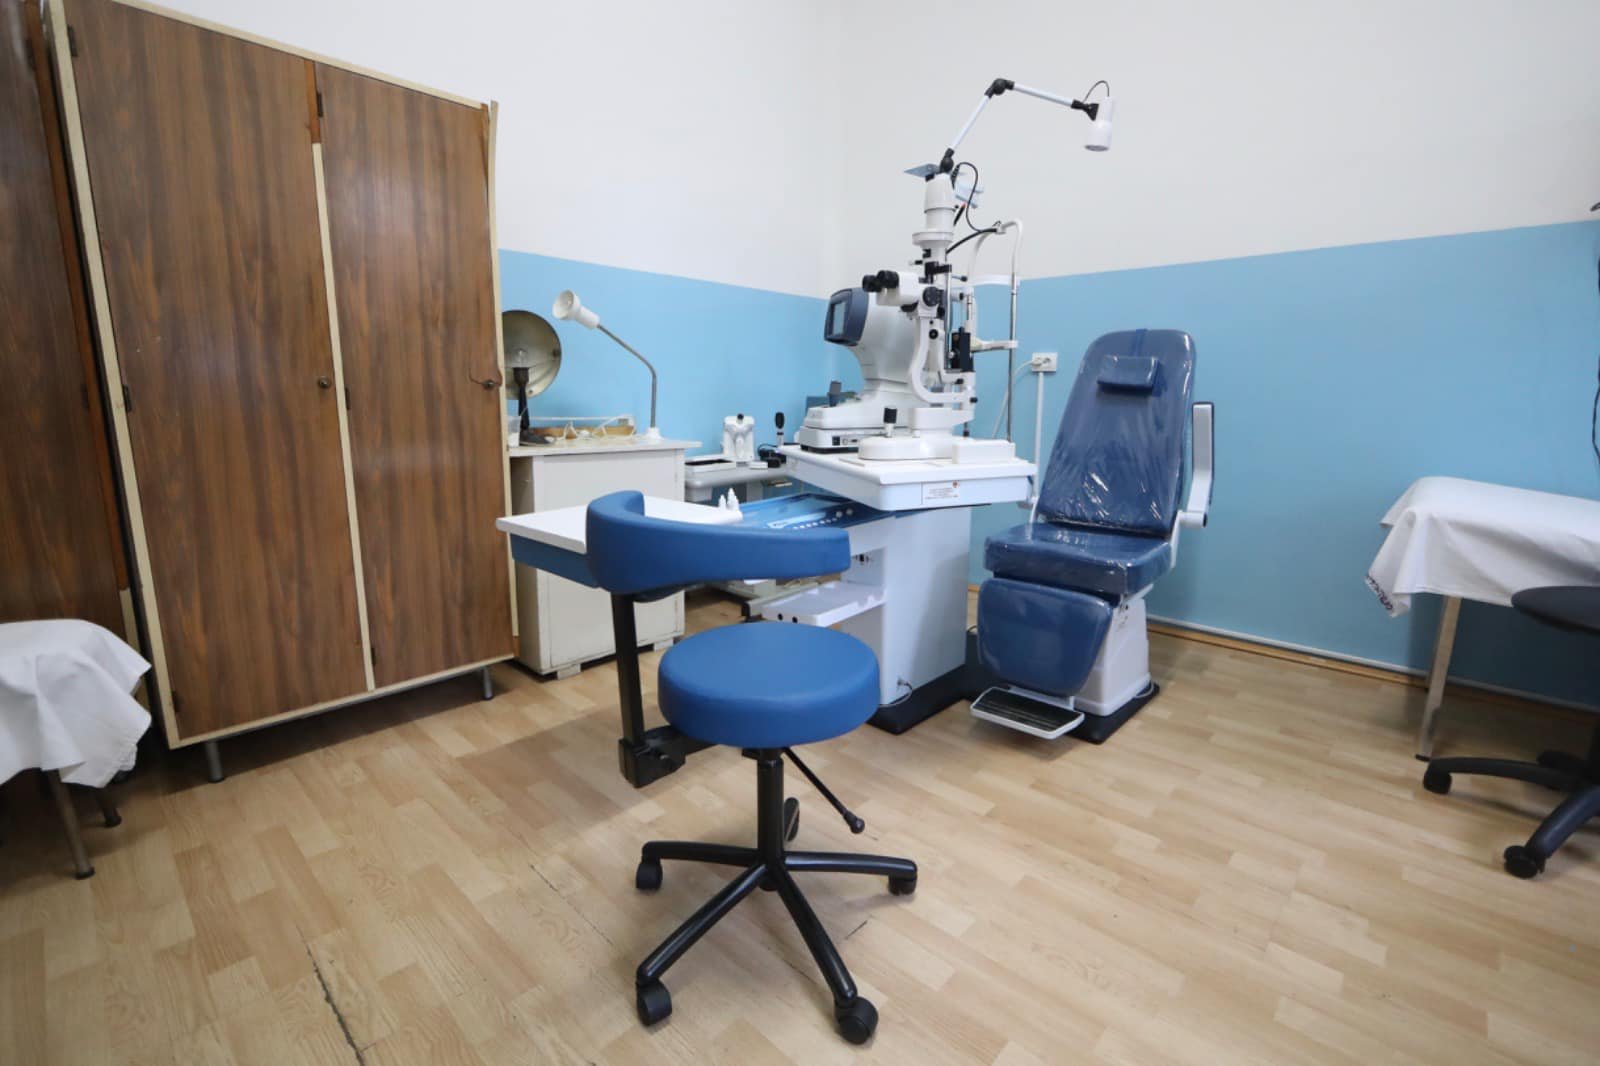 Spitalele din județul Timiș primesc fonduri nerambursabile pentru echipamente medicale